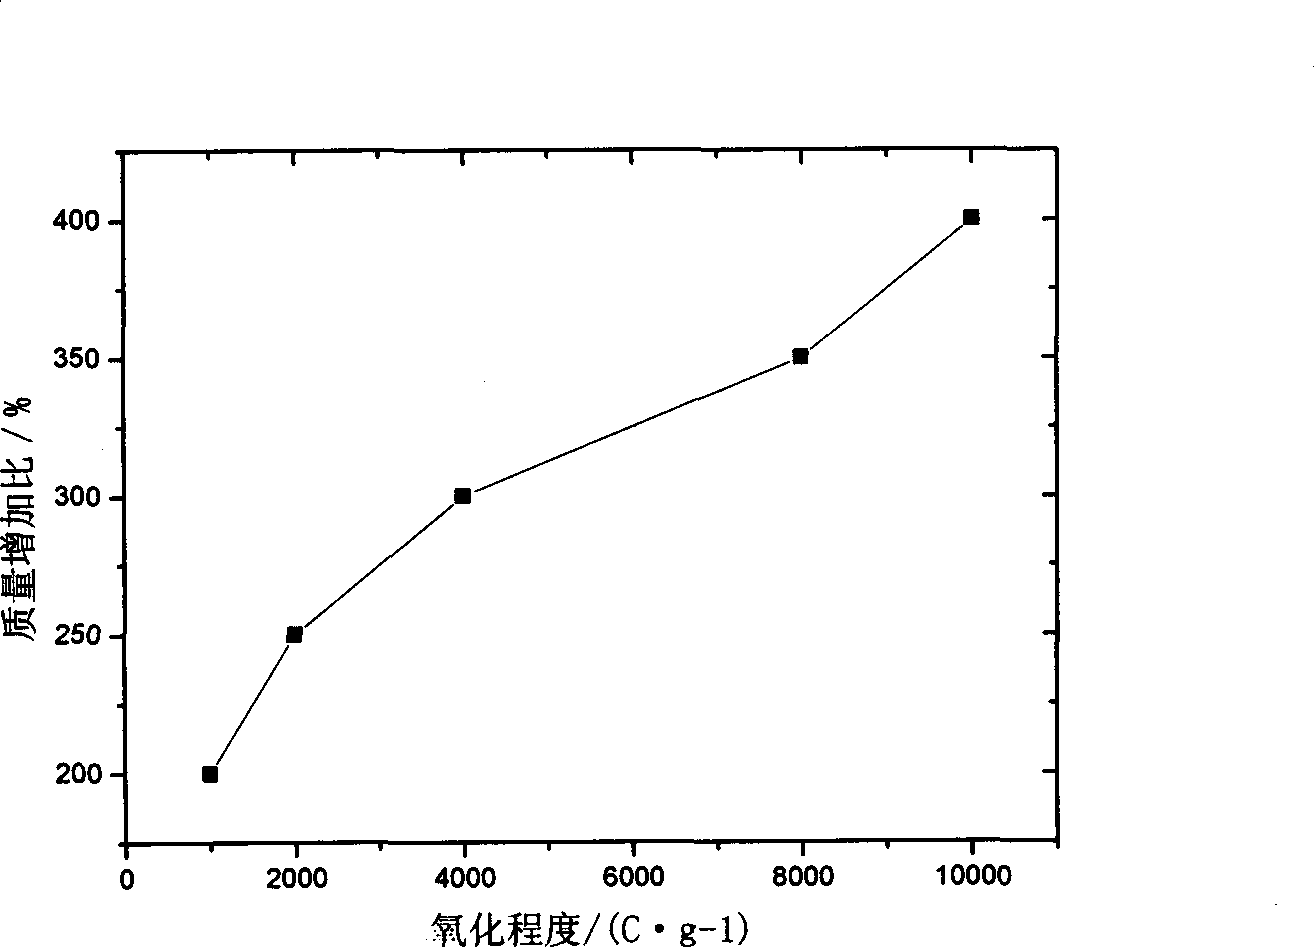 Modified method of graphite felt used for full-vanadium fluid flow battery electrode